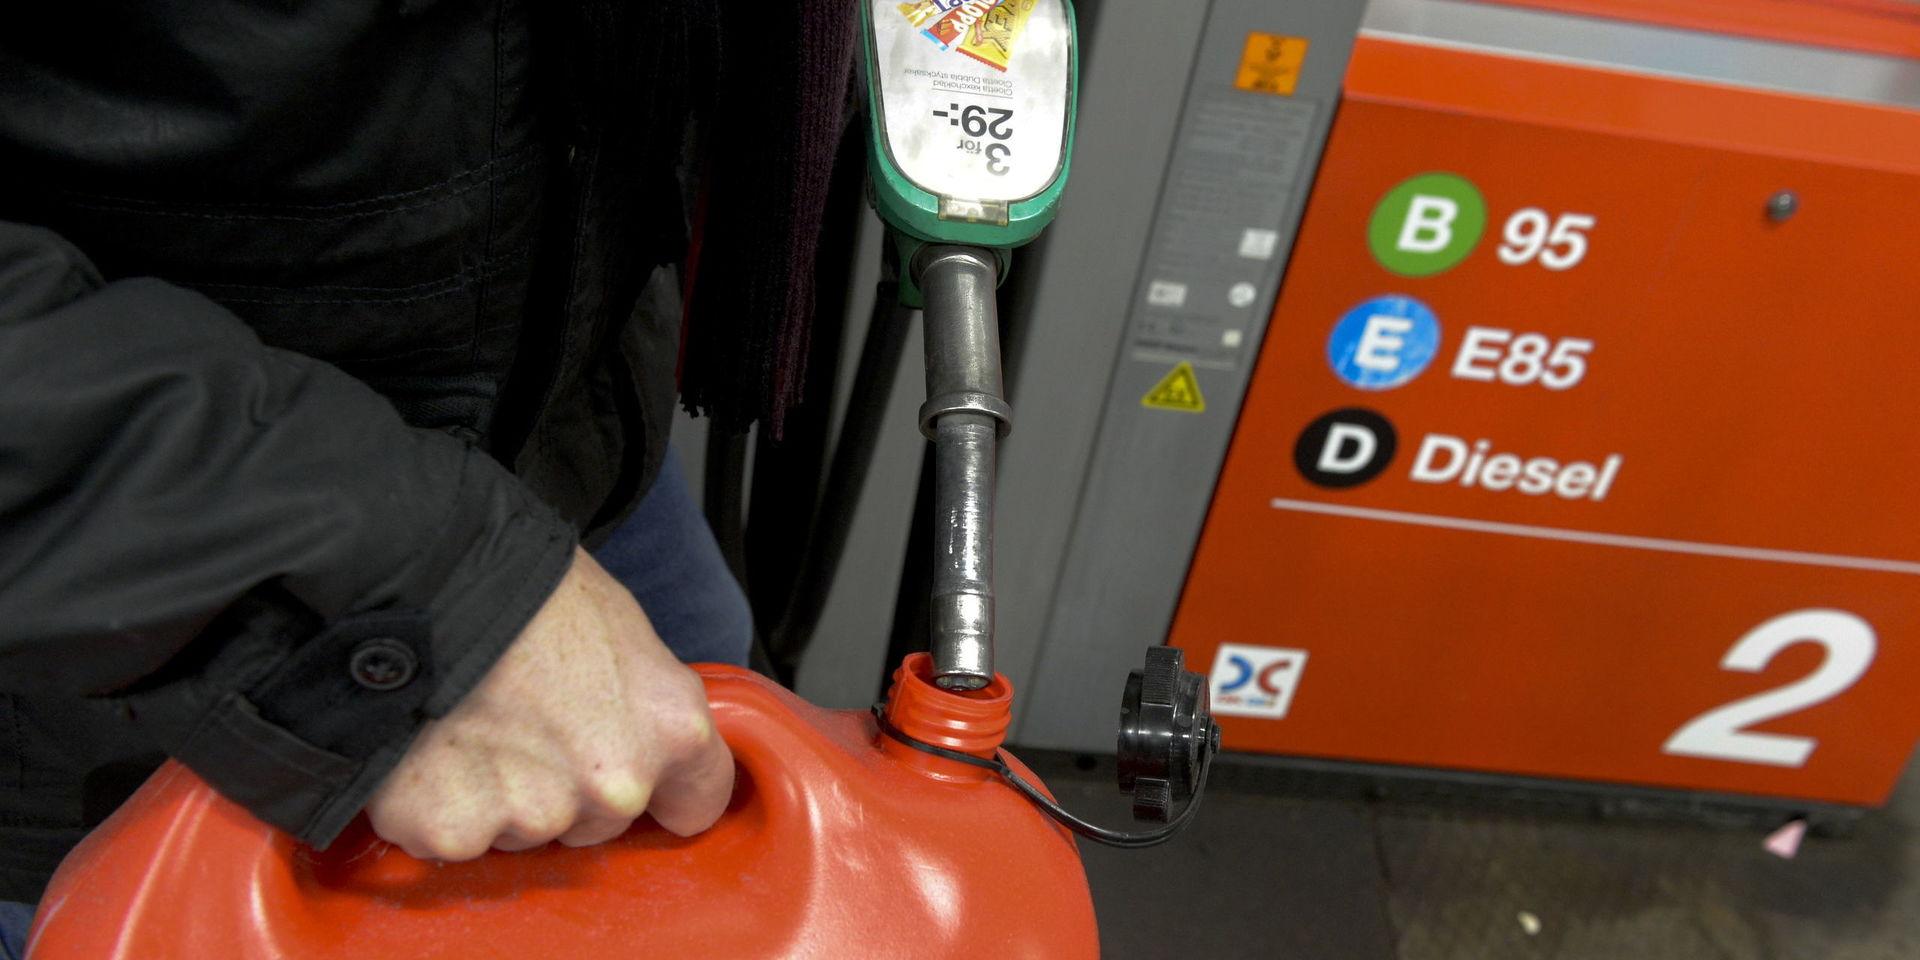 Prisraset på olja får nu genomslag på svenska bensinmackar.